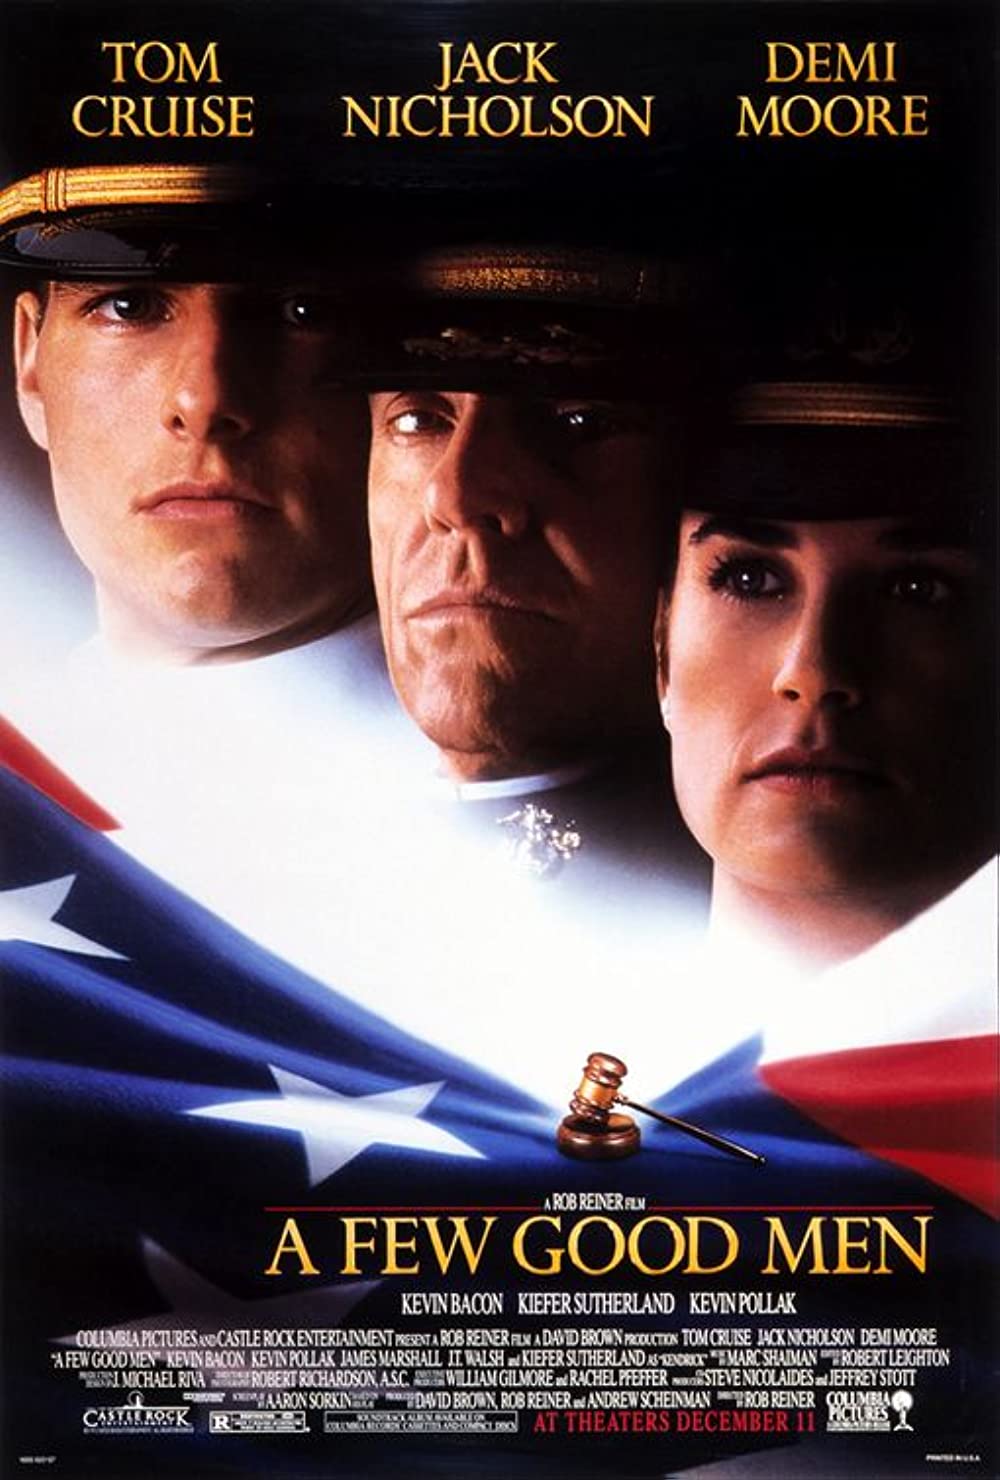 A Few Good Men (1992) ★★★★☆